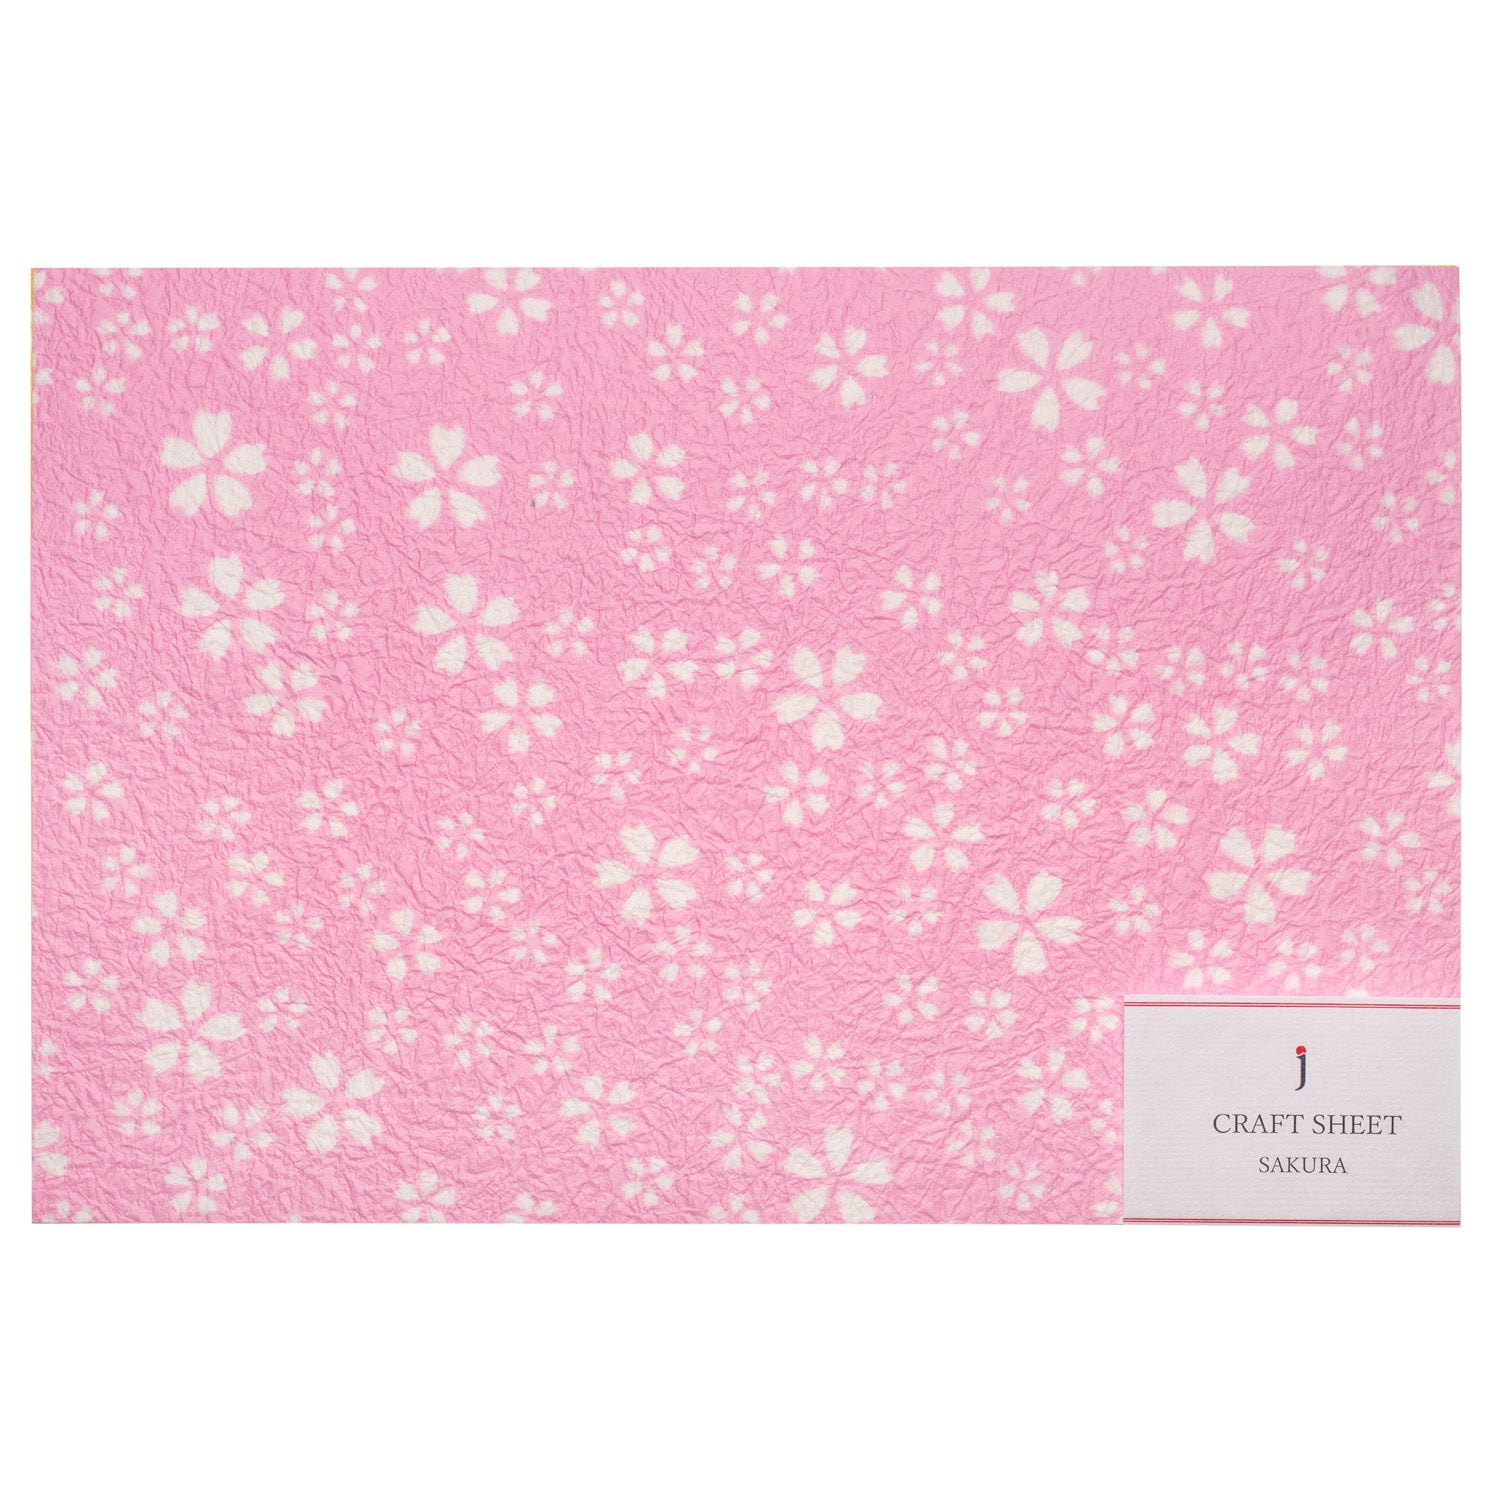 Sakura Craft Sheets Pack 6 Echizen Washi Paper and label